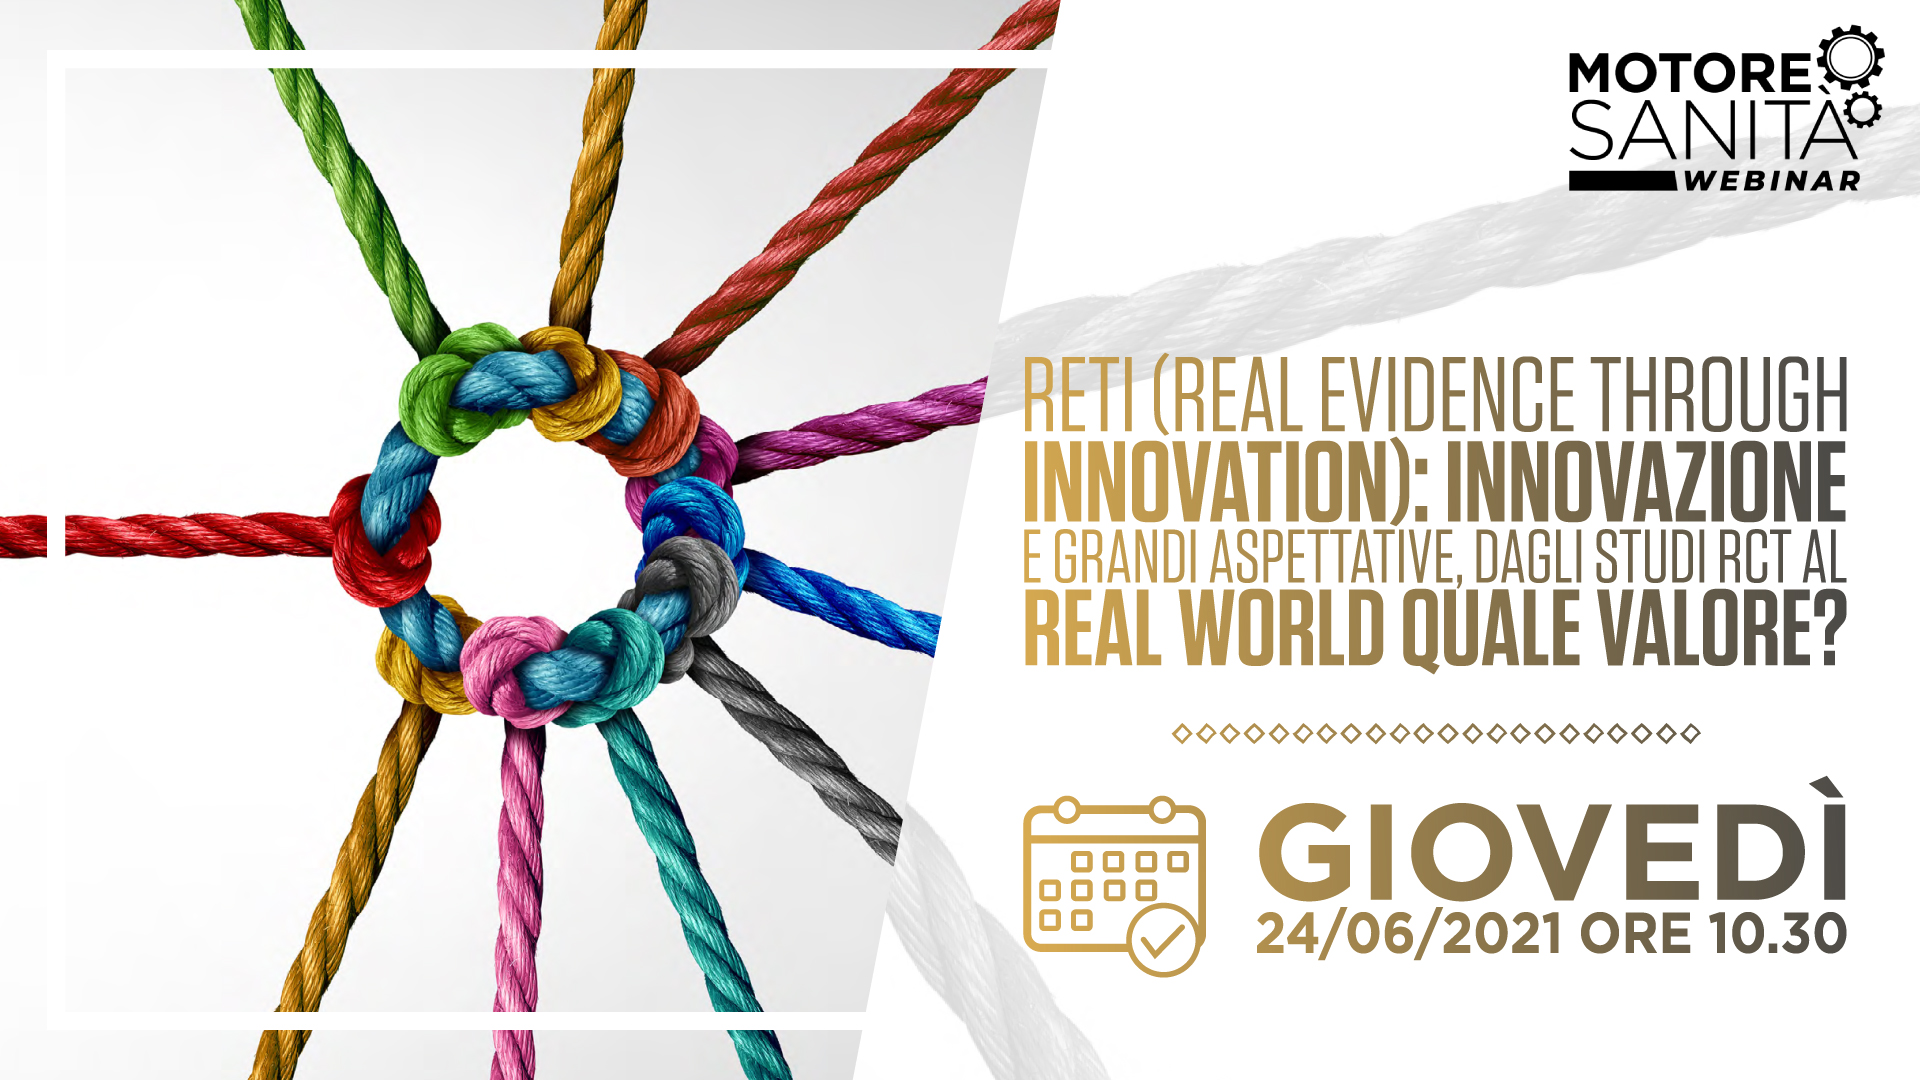 ONCOnnection - RETI (real evidence through innovation): innovazione e grandi aspettative, dagli studi rct al real world quale valore?